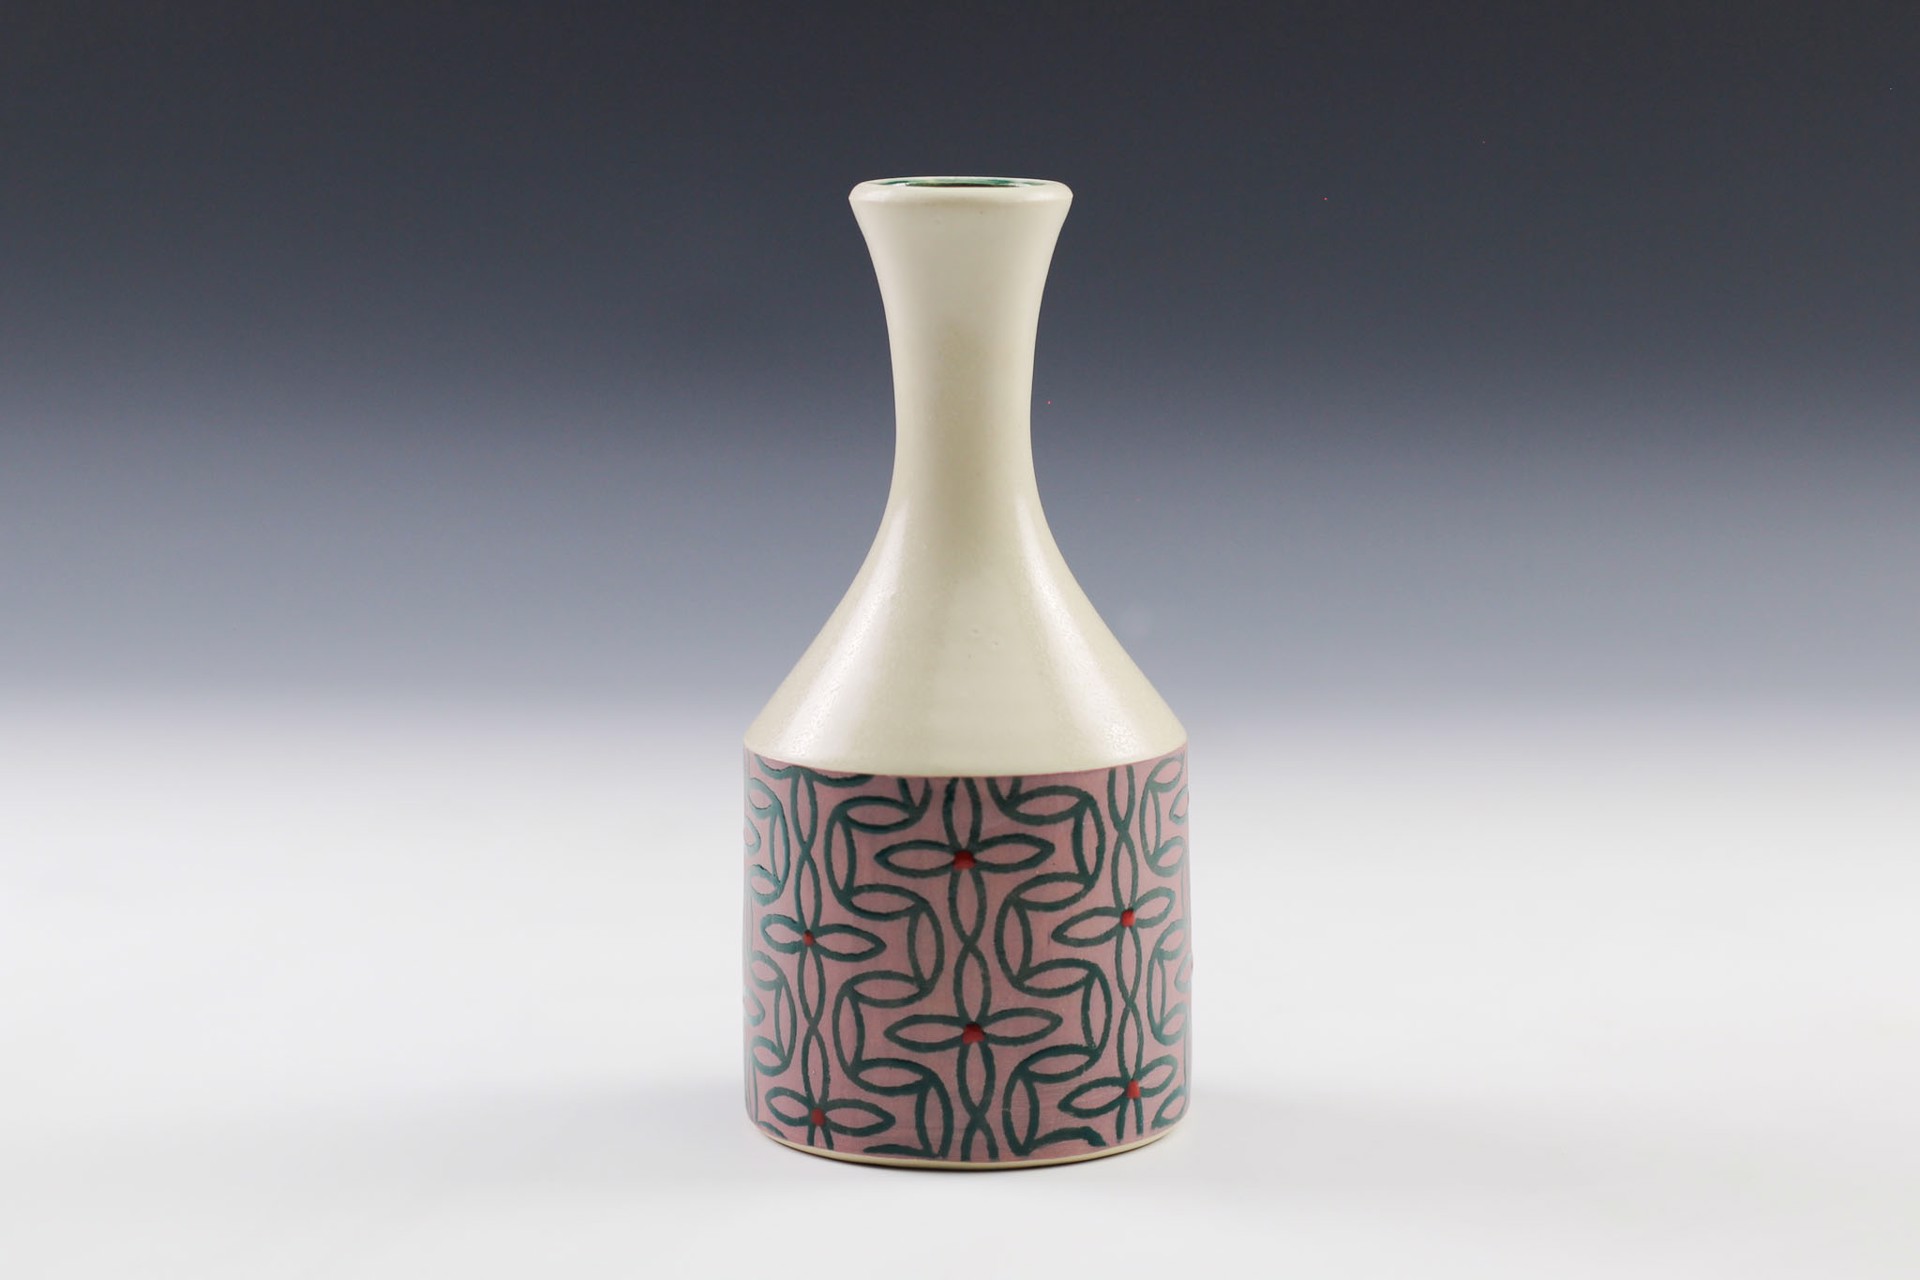 Vase by Rachelle Miller